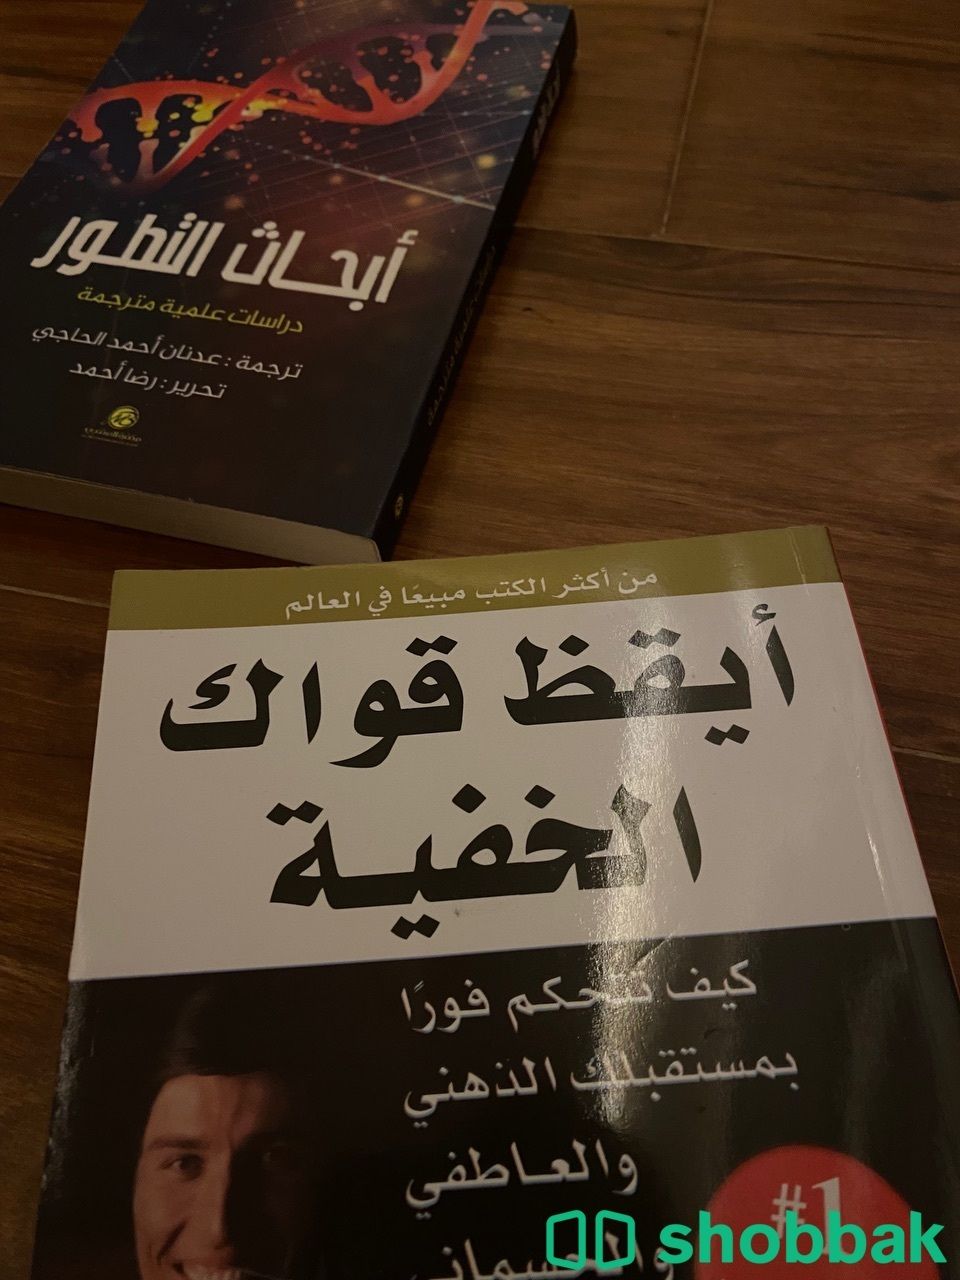 كتب جديده ونظيفه Shobbak Saudi Arabia